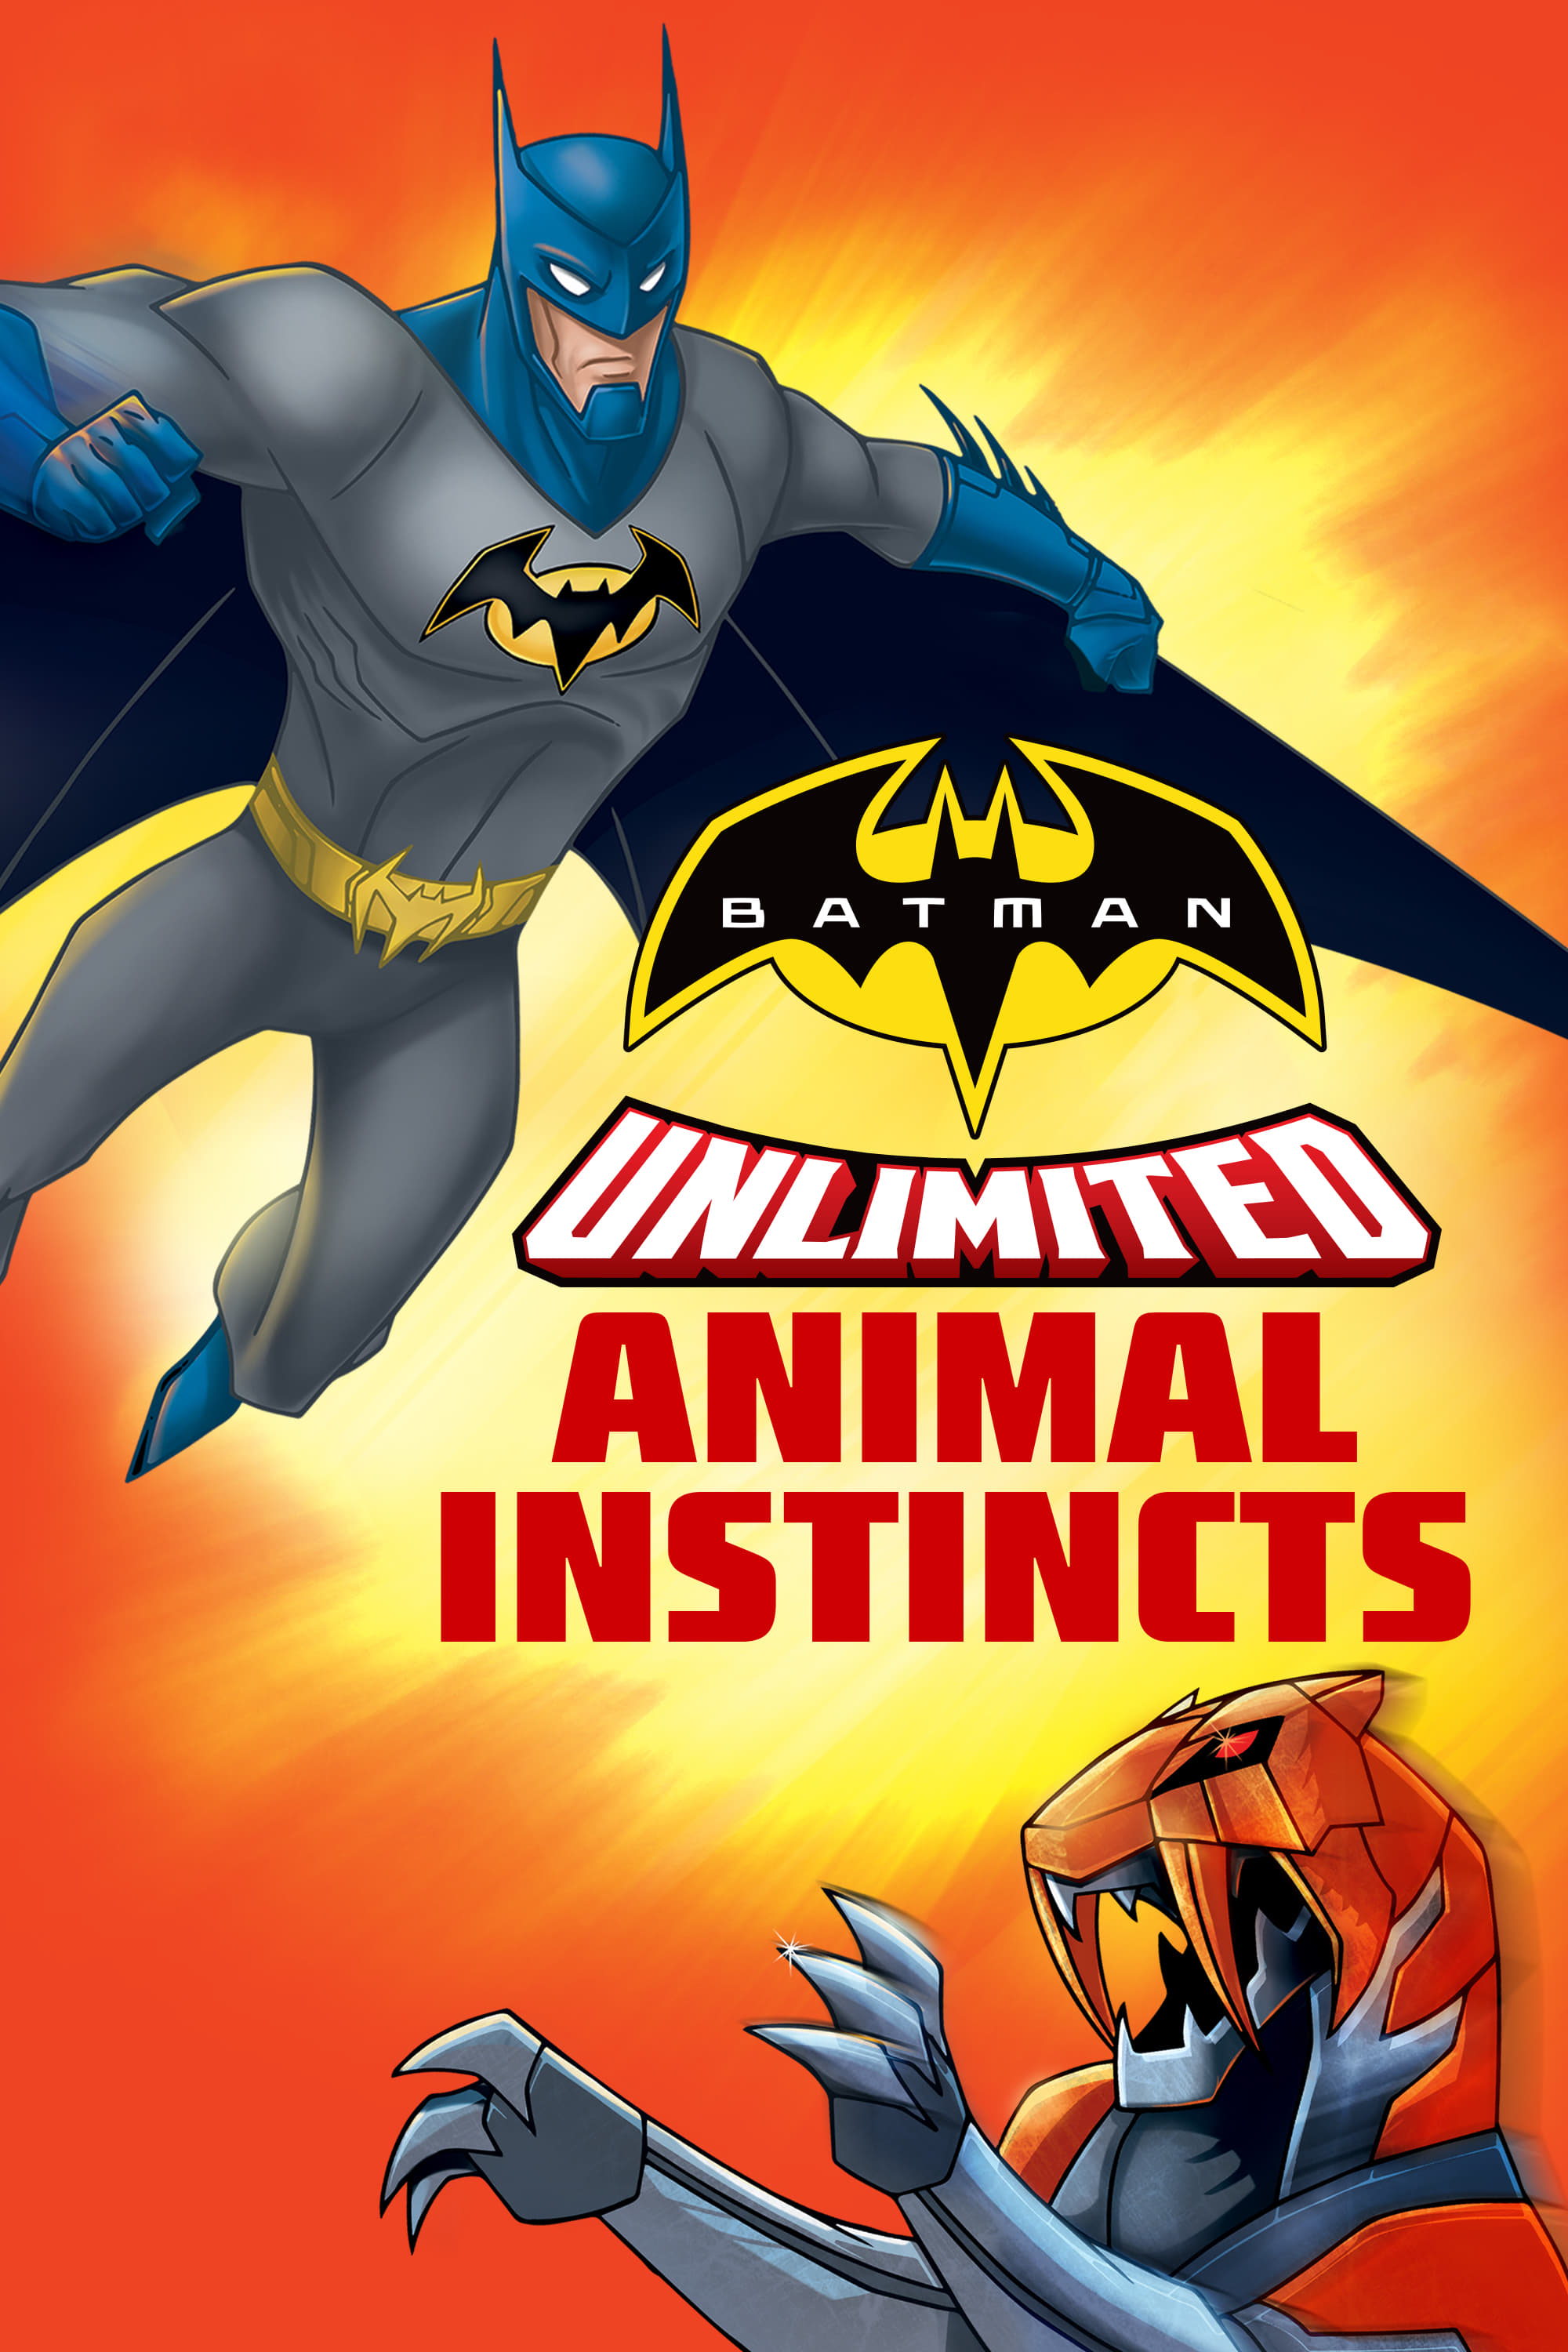 Watch Batman Unlimited: Animal Instincts (2015) Full Movie Online - Plex